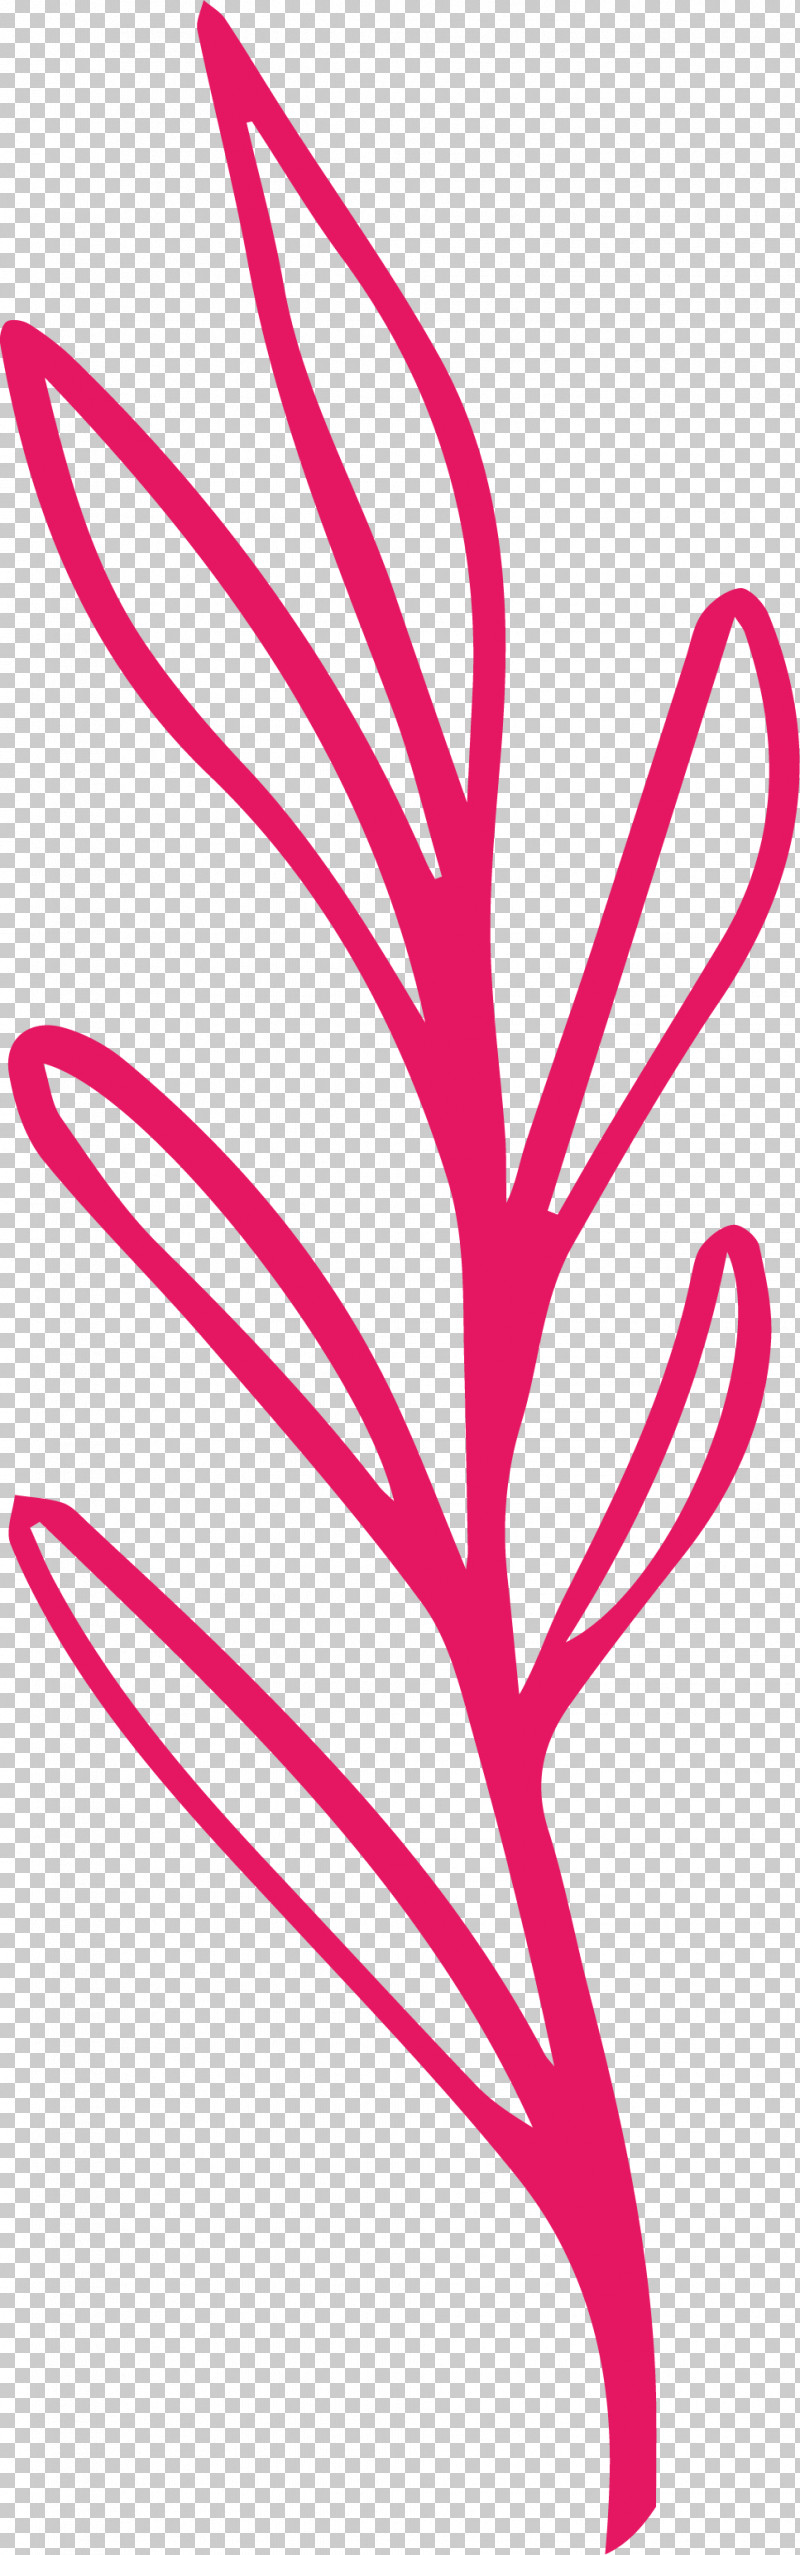 Simple Leaf Simple Leaf Drawing Simple Leaf Outline PNG, Clipart, Flower, Leaf, Line, Line Art, Meter Free PNG Download